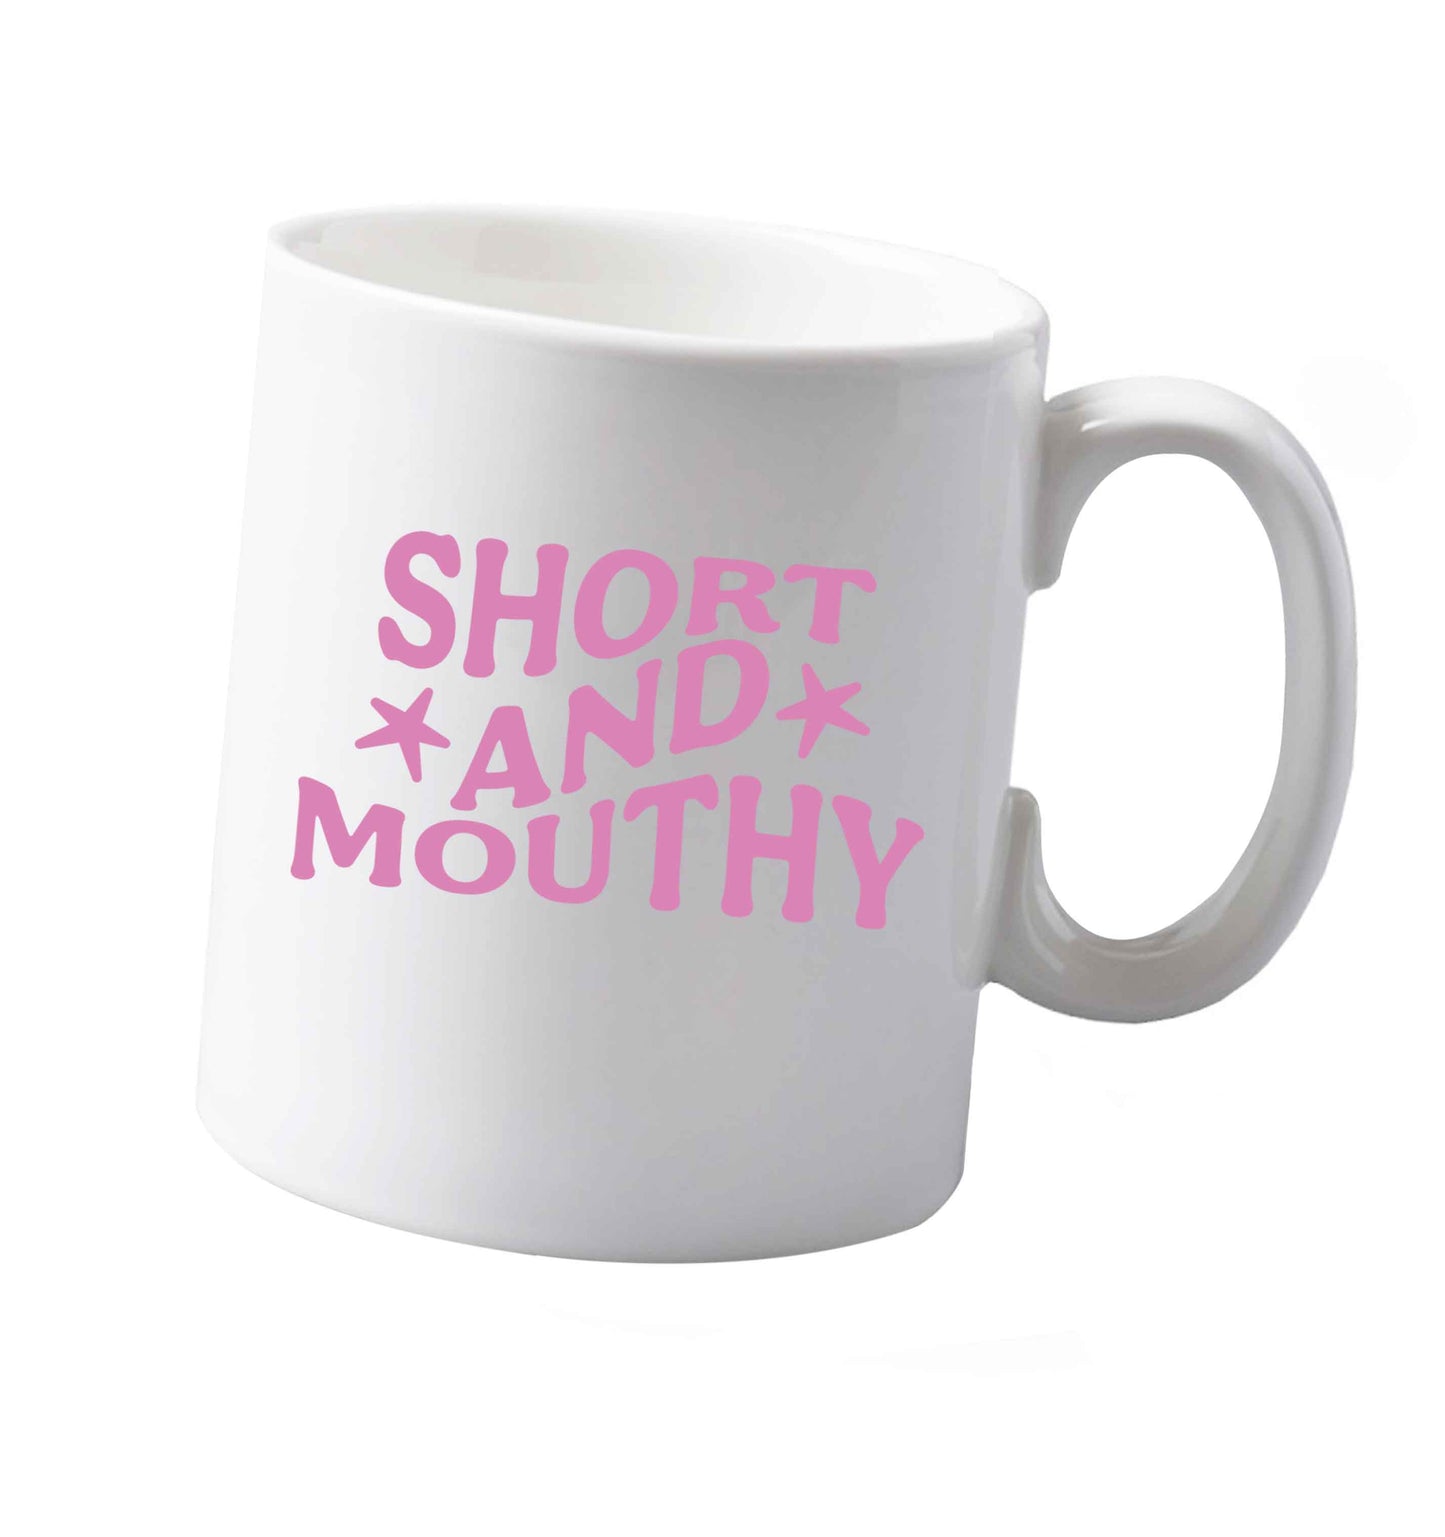 10 ozShort and Mouthy ceramic mug both sides